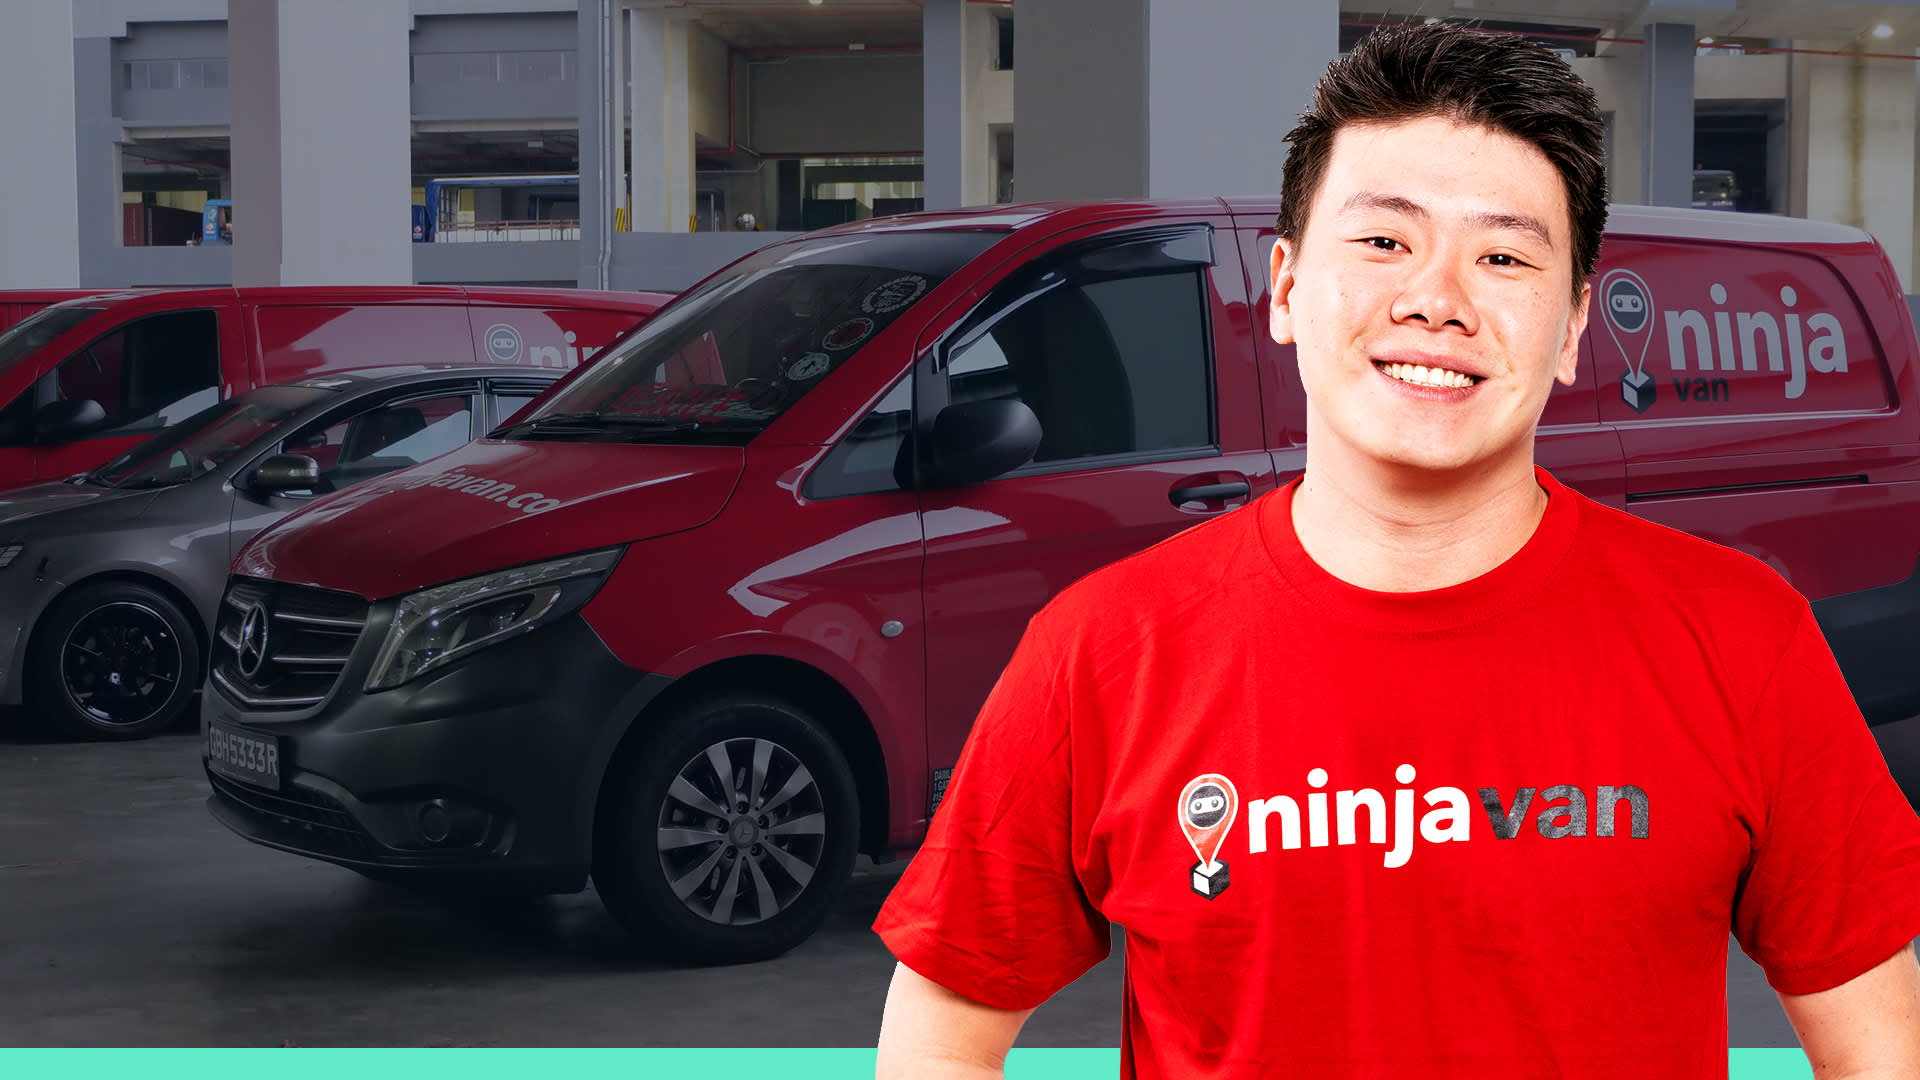 ninja van freelance